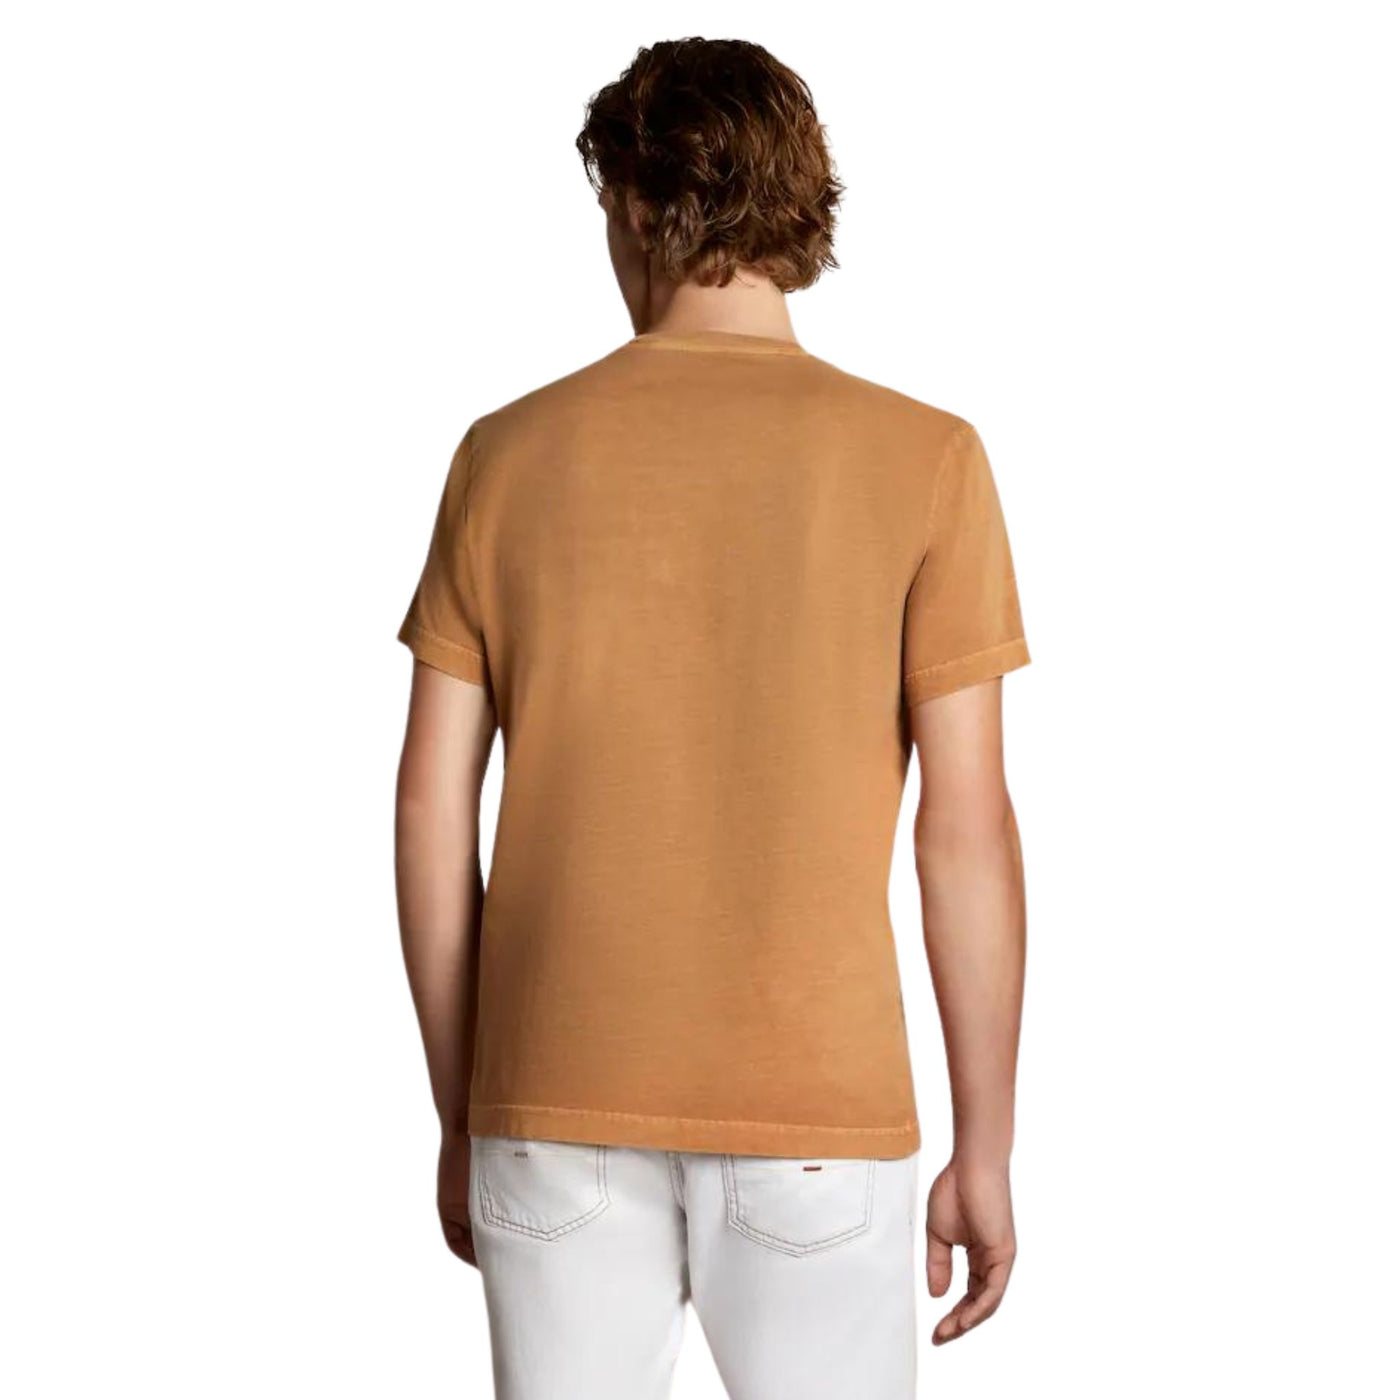 Retro modello con T-shirt in cotone con taschino sul petto